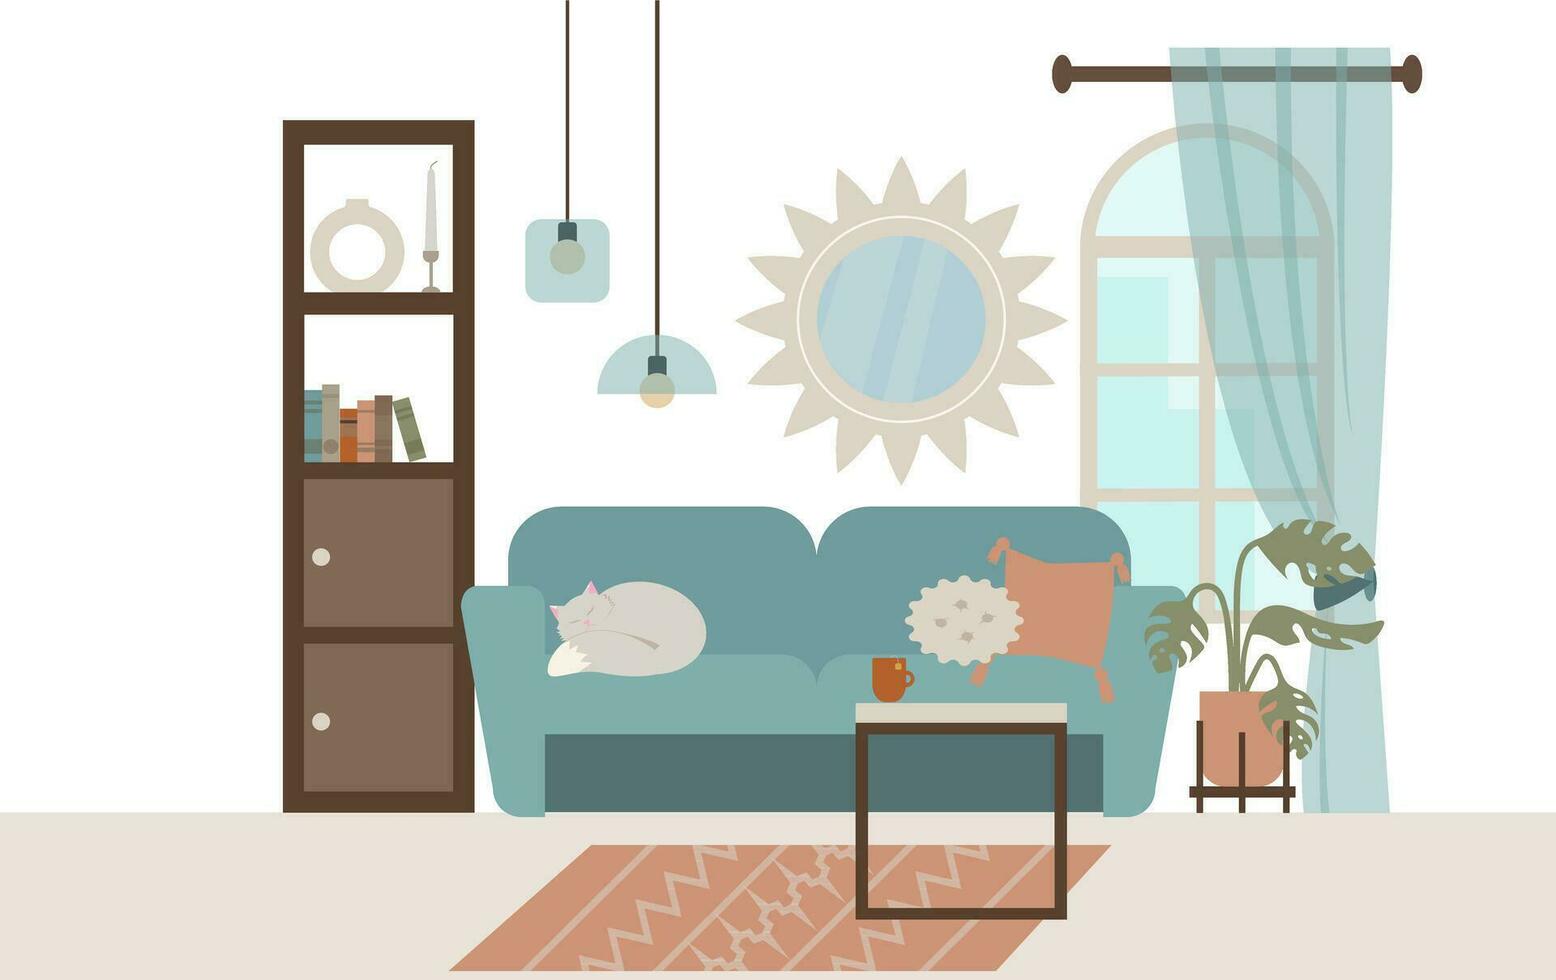 vivant pièce intérieur avec meubles, canapé, fauteuil, café tableau, fenêtre et plante. plat style vecteur illustration.